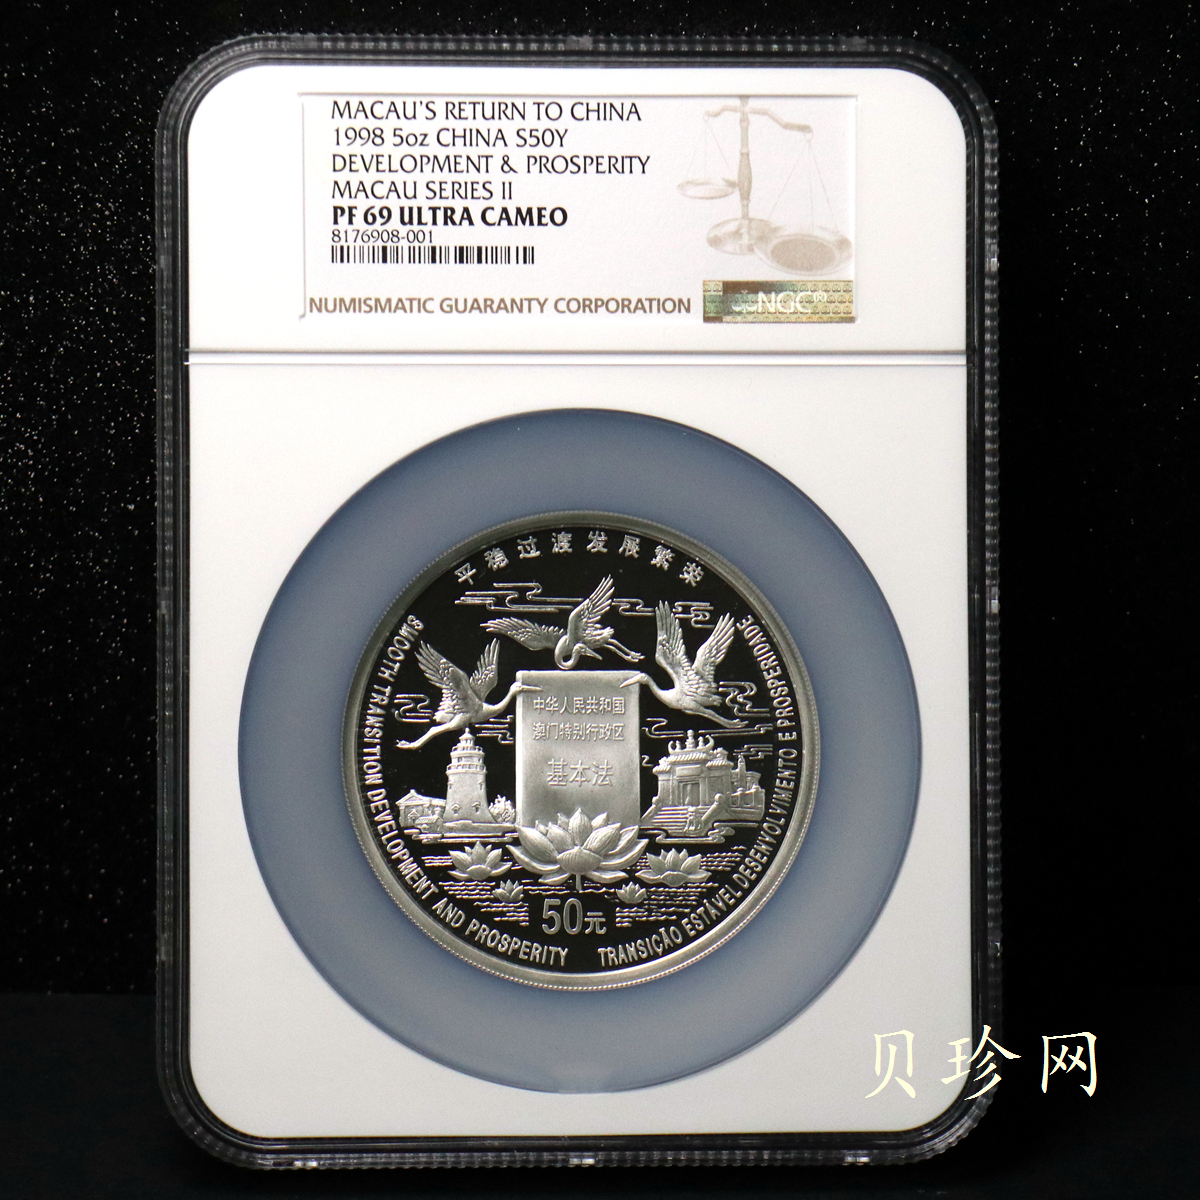 【980903】1998年澳门回归祖国金银纪念币（第2组）-基本法5盎司精制银币